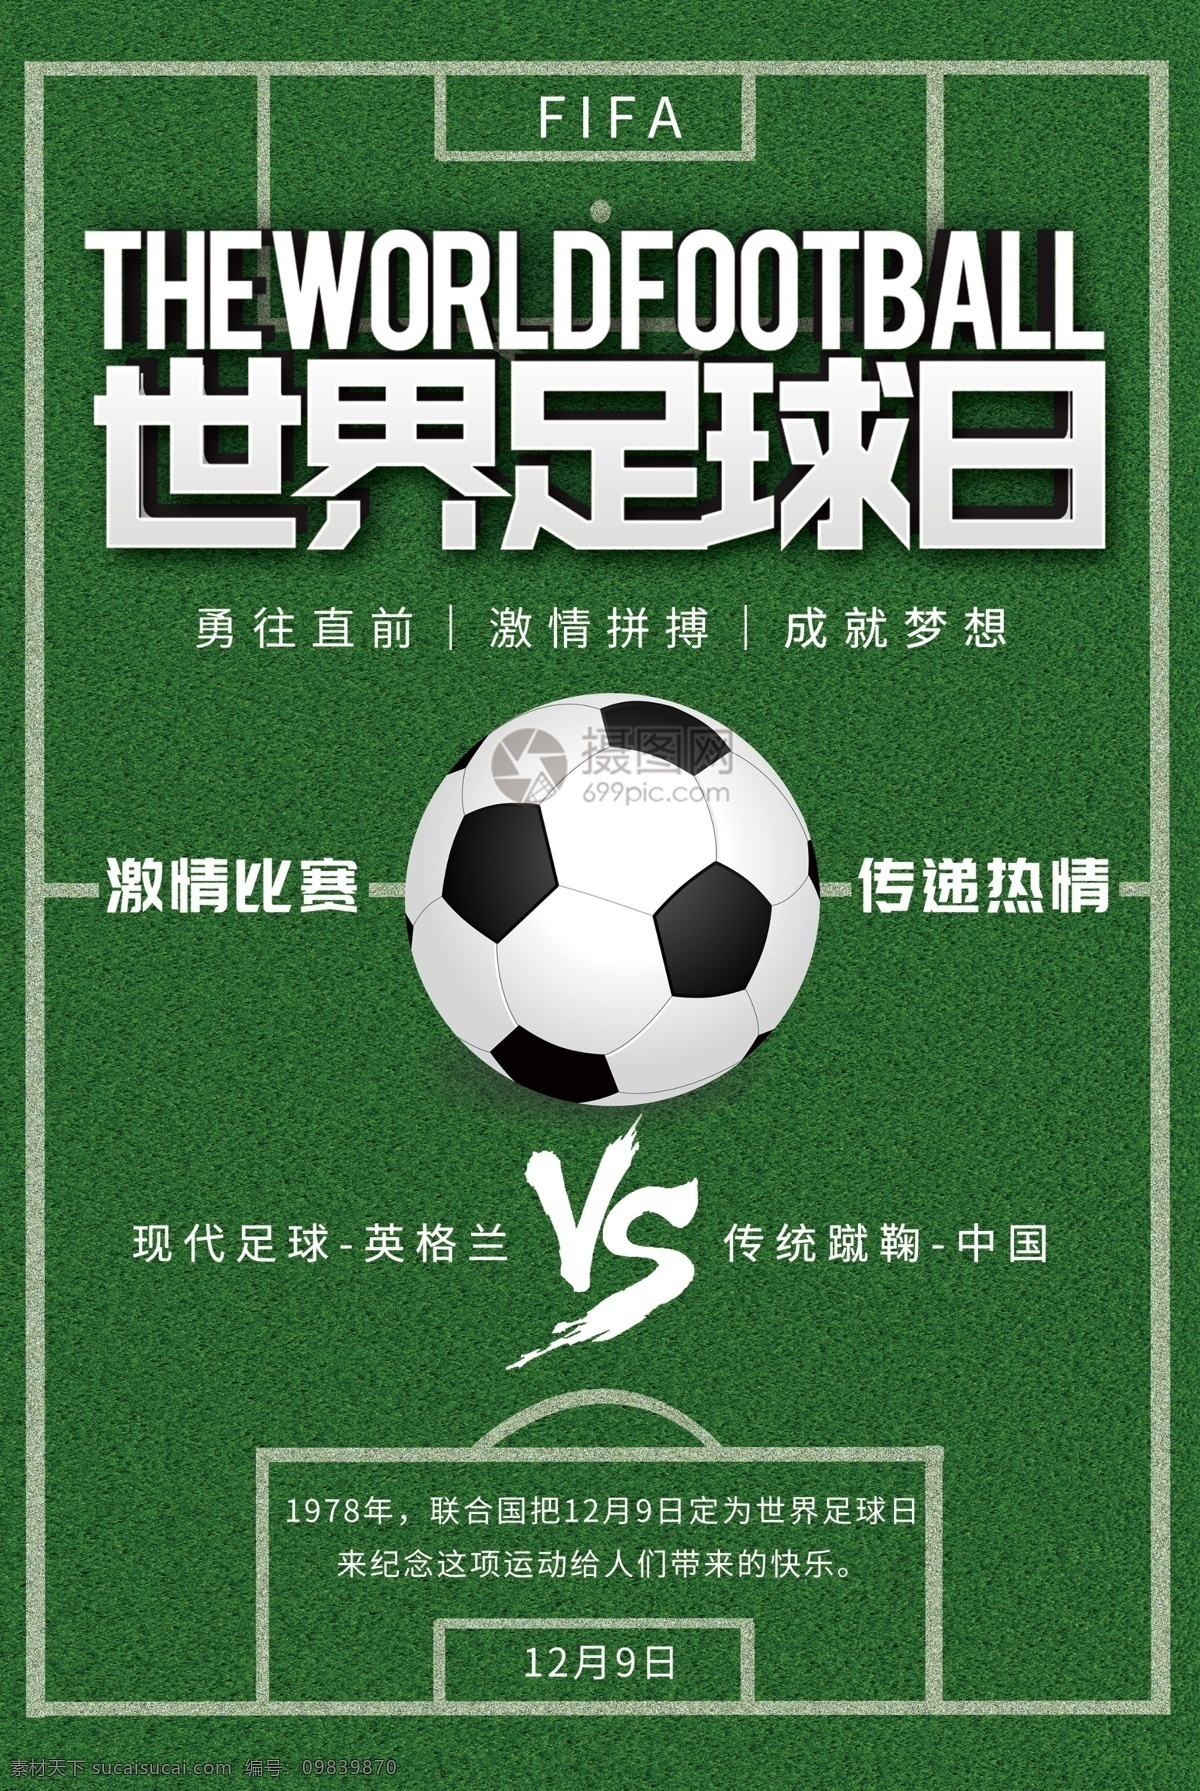 绿色 世界 足球 日 宣传海报 国际 足球日 足球场 绿茵场 比赛 宣传 活动 节日 激情比赛 传递热情 世界足球日